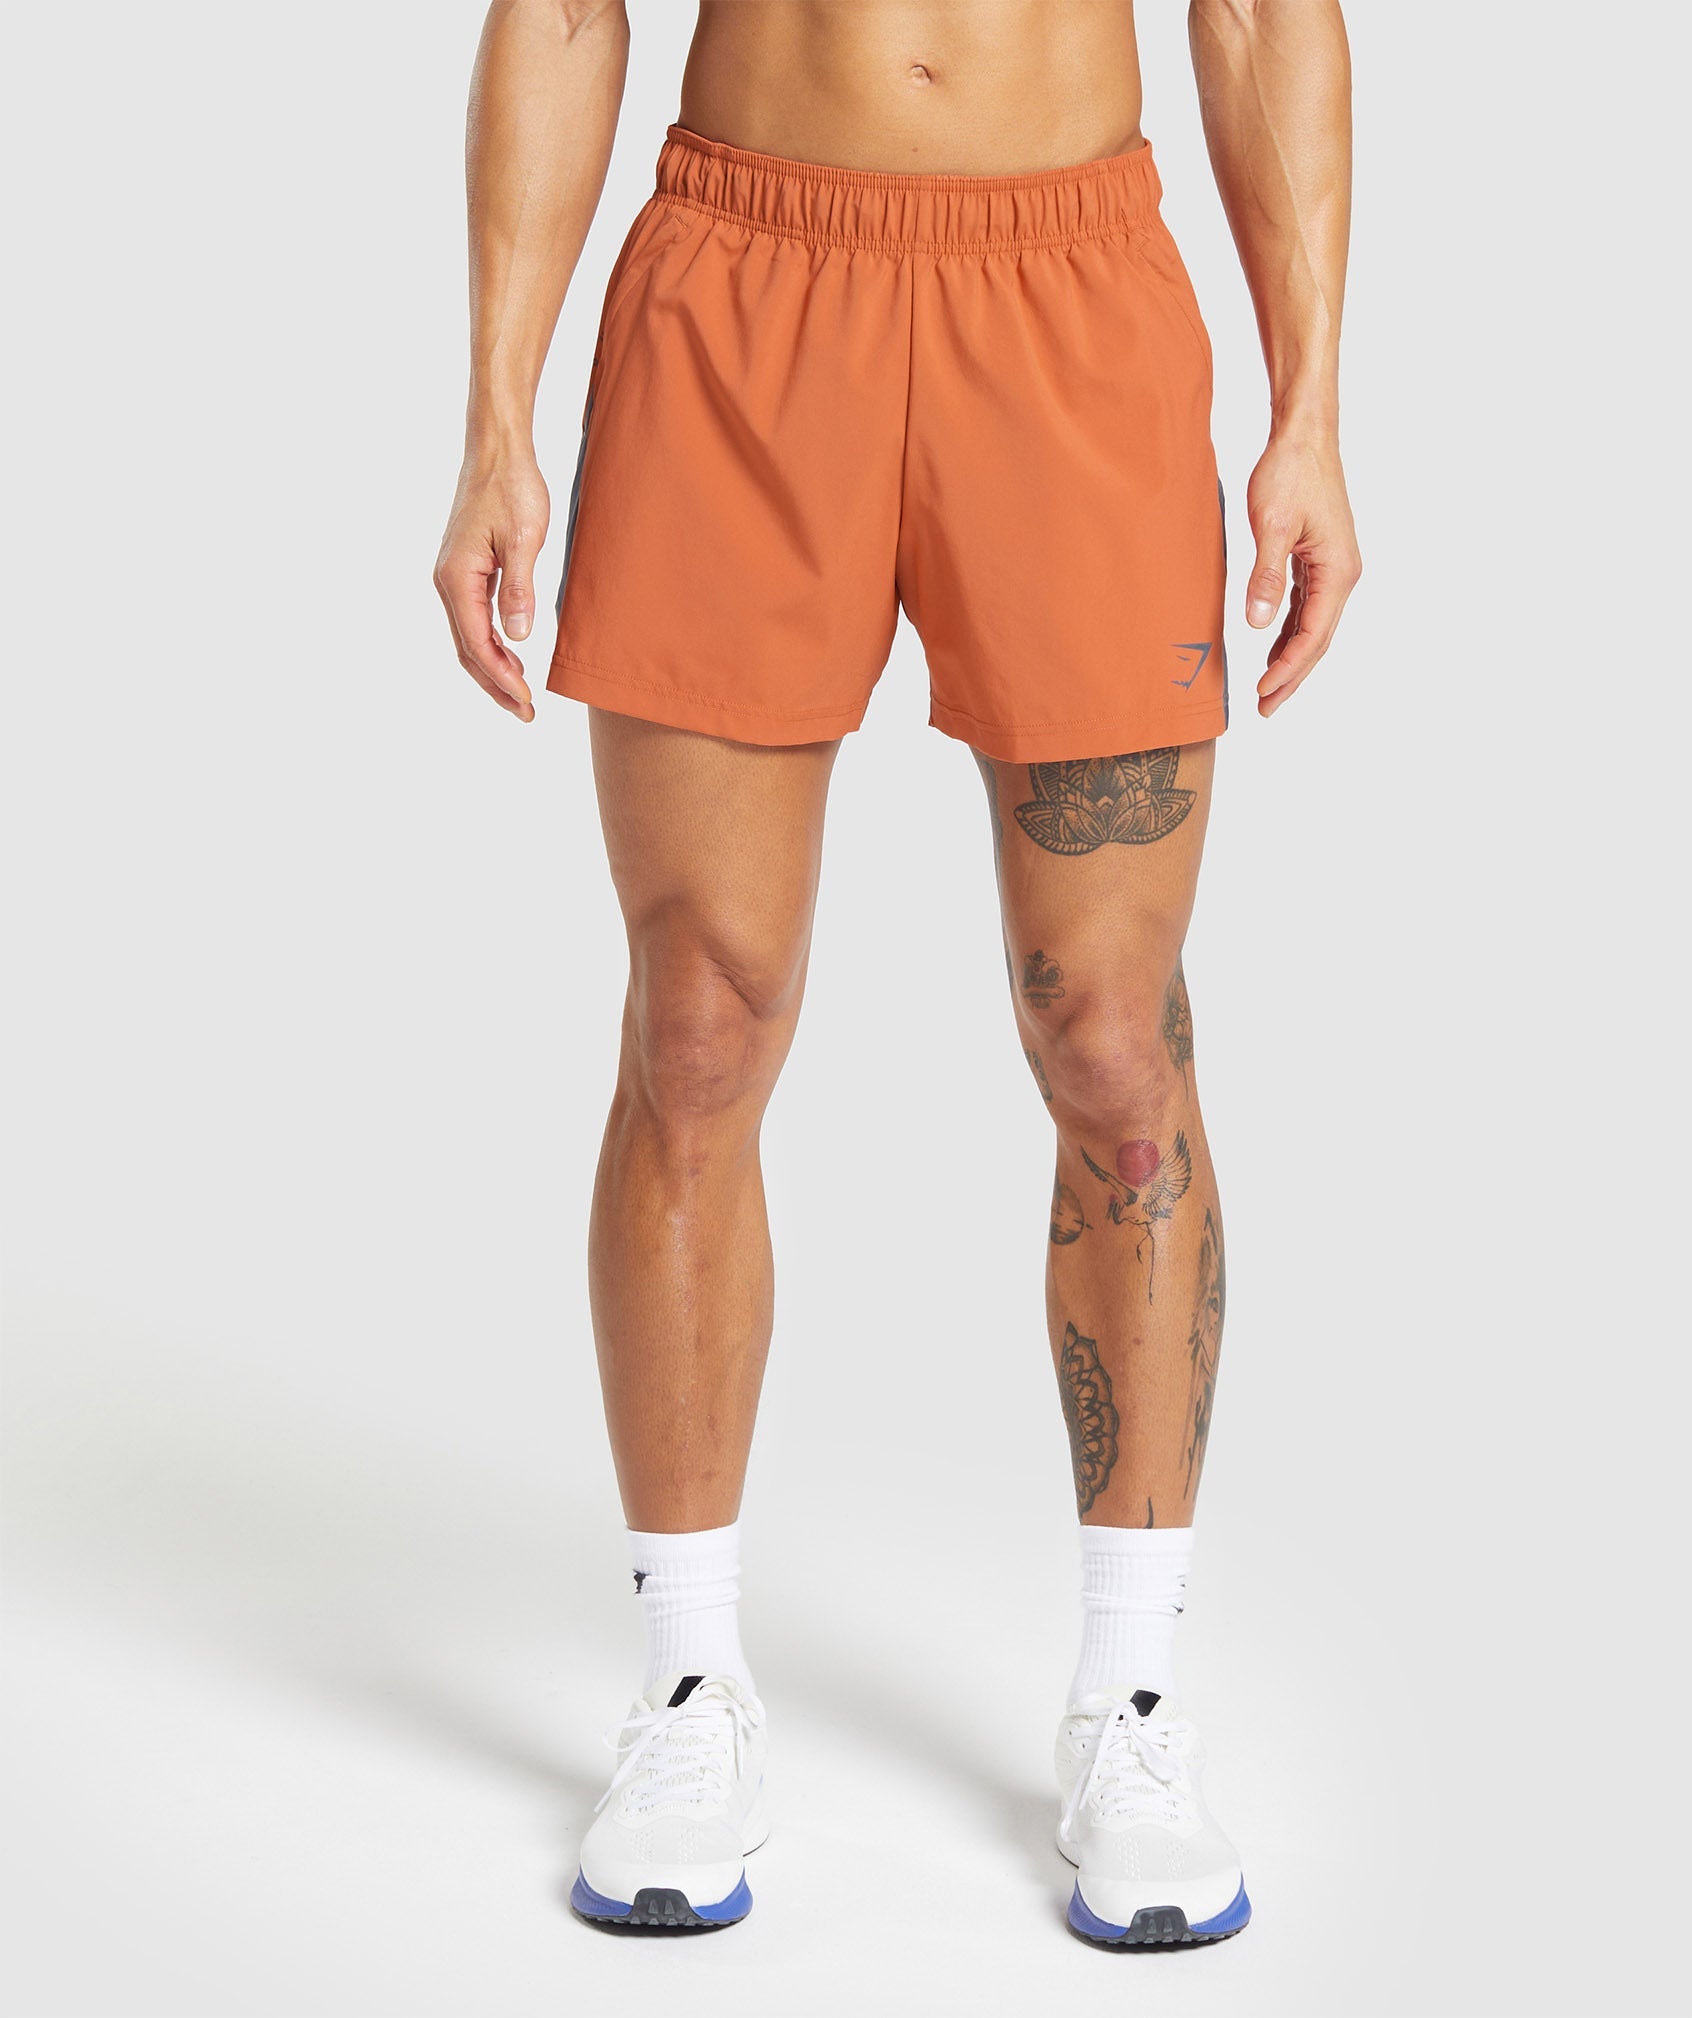 Sport 5" Shorts in Muted Orange/Titanium Blue ist nicht auf Lager